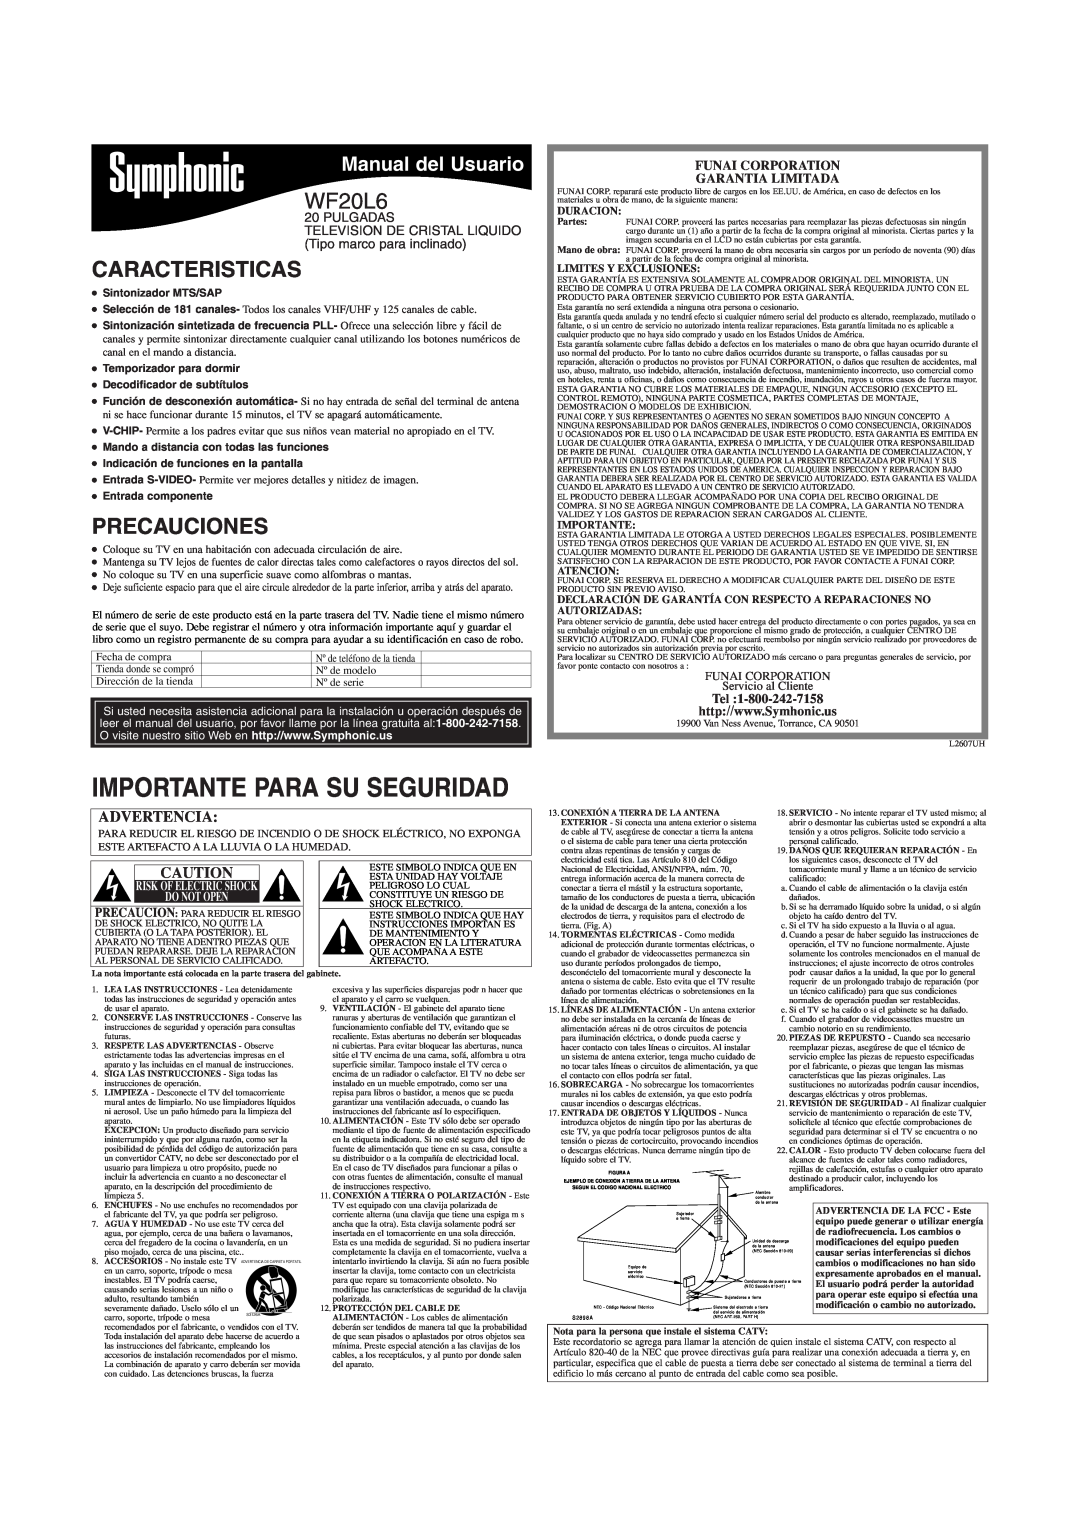 Symphonic WF20L6 Caracteristicas, Precauciones, Manual del Usuario, Funai Corporation Garantia Limitada, Duracion 